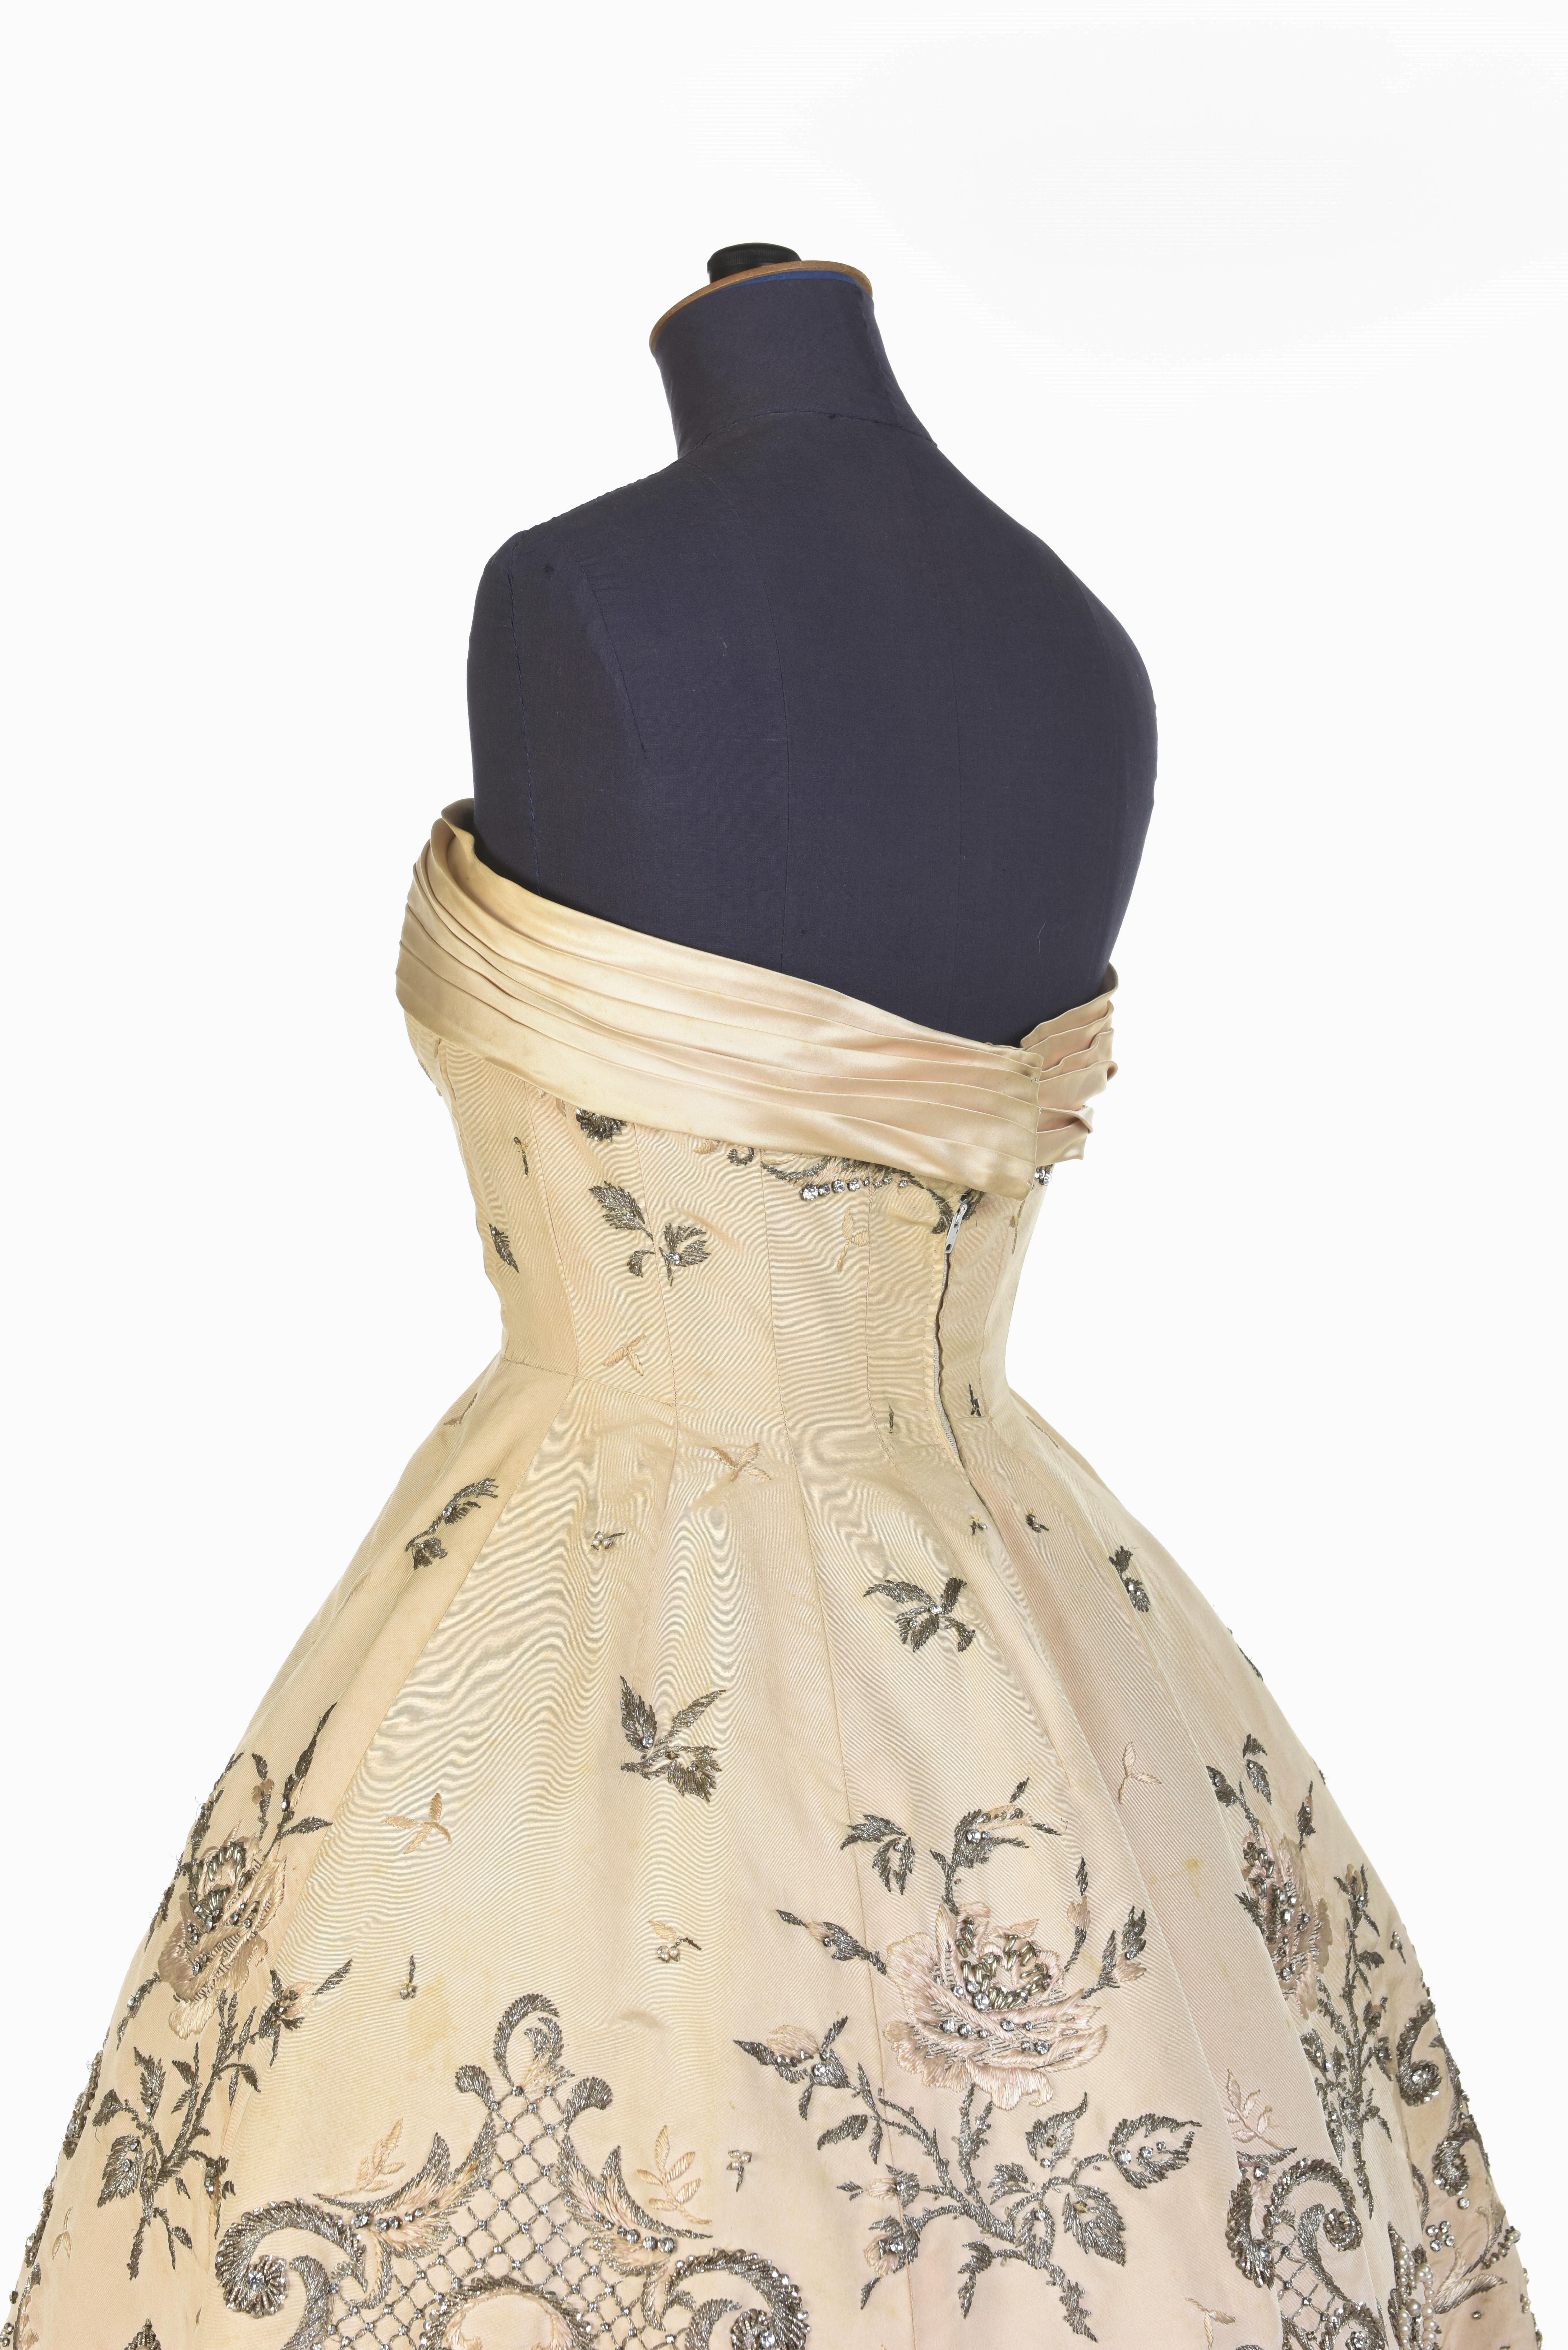 Robe de bal Pierre Balmain Couture en soie crème numérotée 87681, datant d'environ 1955/1957 1